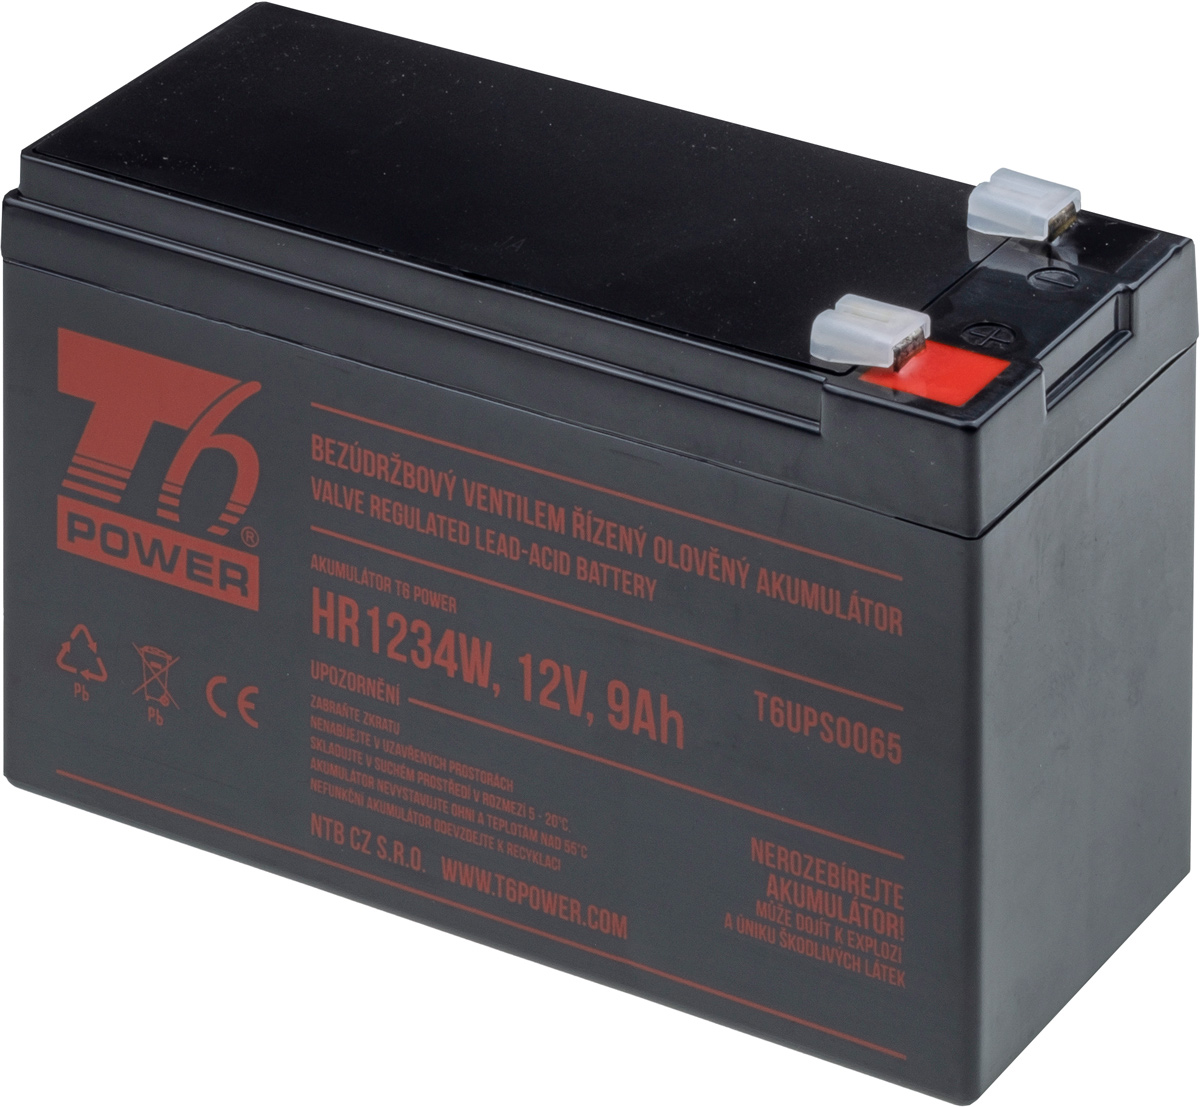 Obrázek T6 Power RBC17 - battery KIT